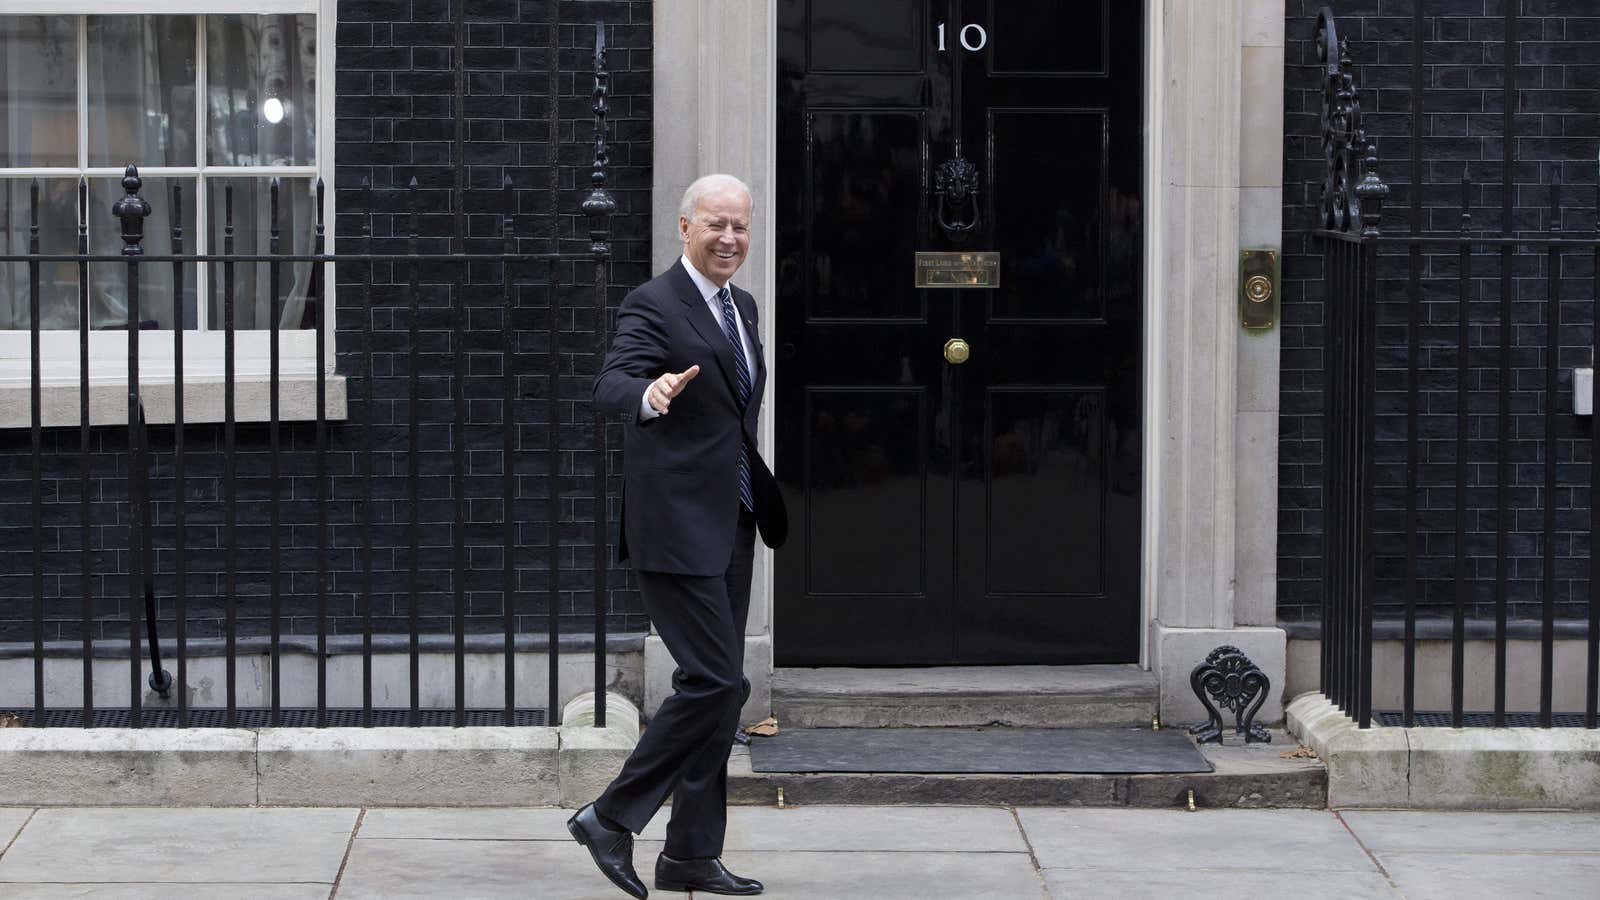 Then US vice president Joe Biden arrives in Downing Street in London on February 5, 2013.